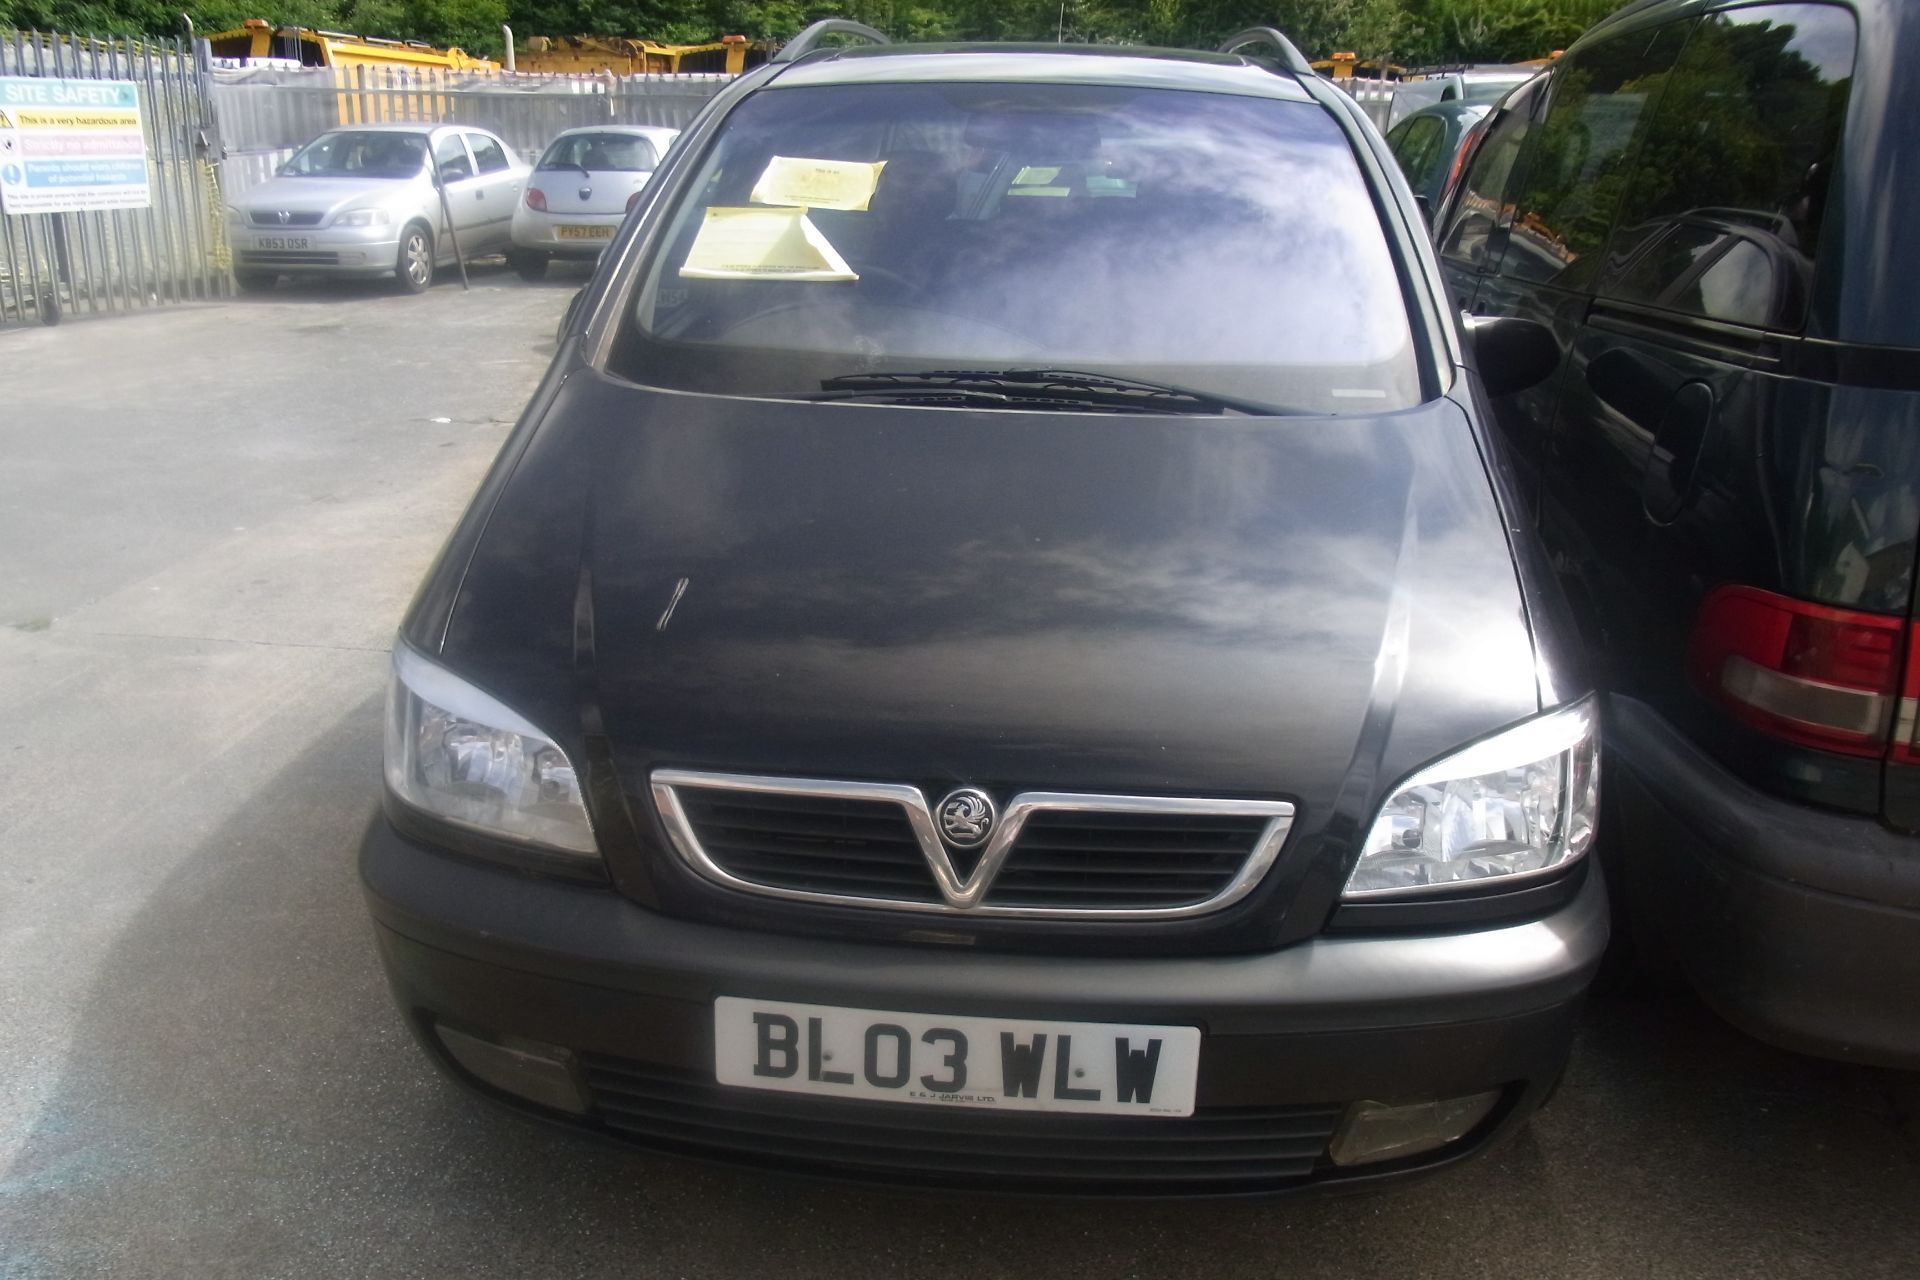 BL03 WLW - Vauxhall Zafira Elegance 16V